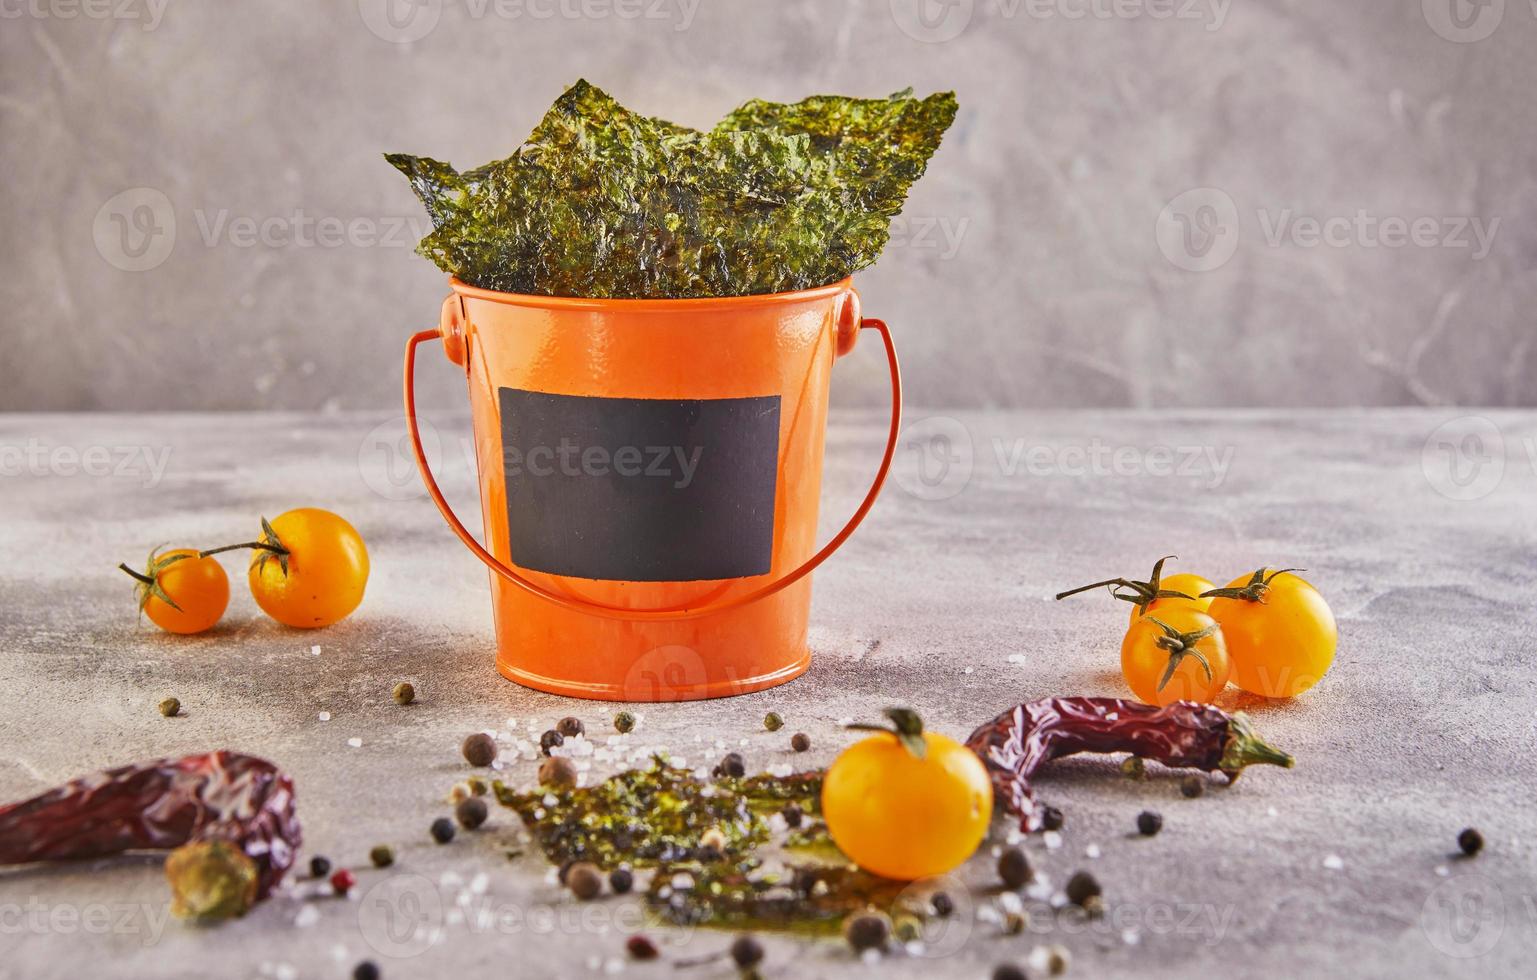 alga nori croccante con pomodorini e spezie in un secchio arancione foto